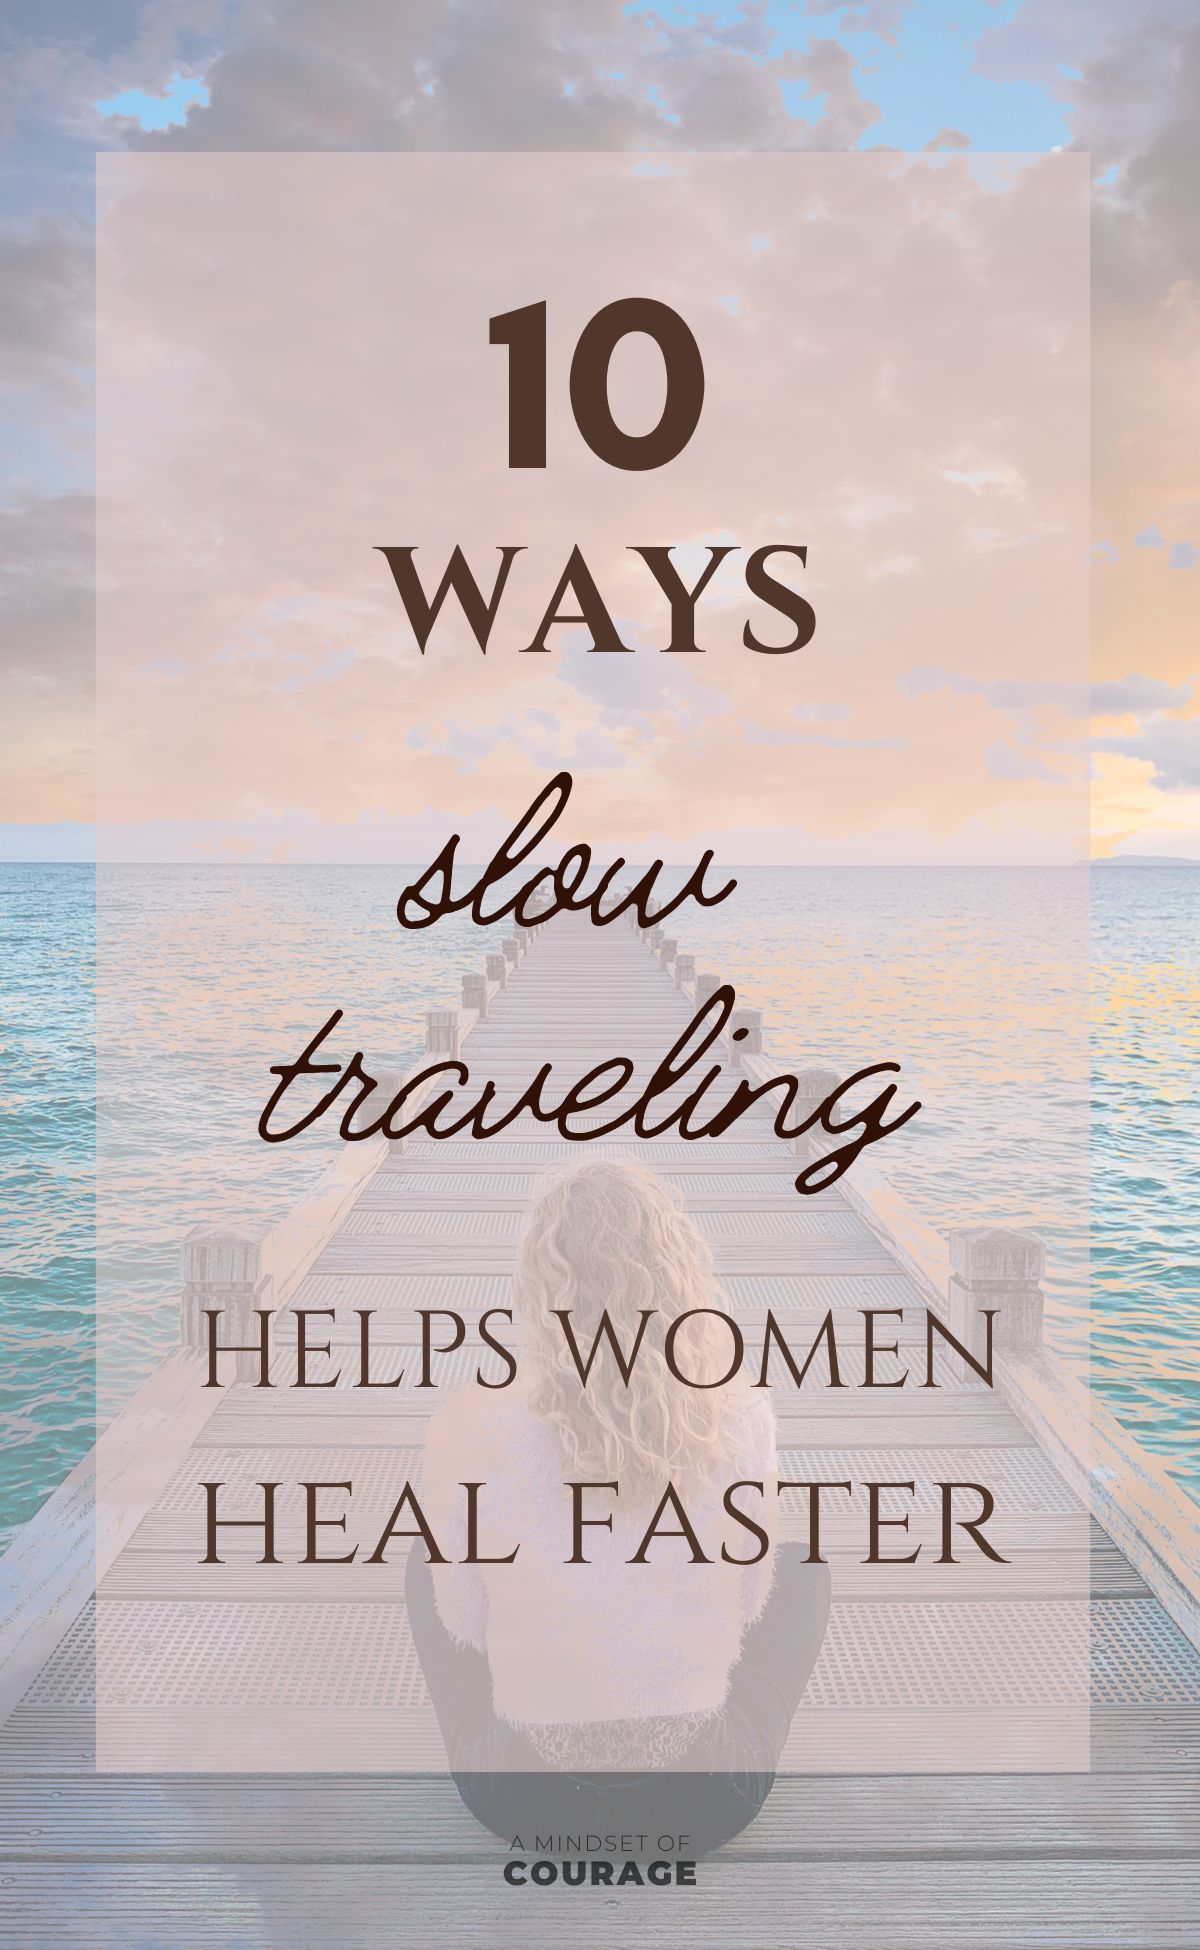 10 preuves que voyager en solo accélère le healing (femme)